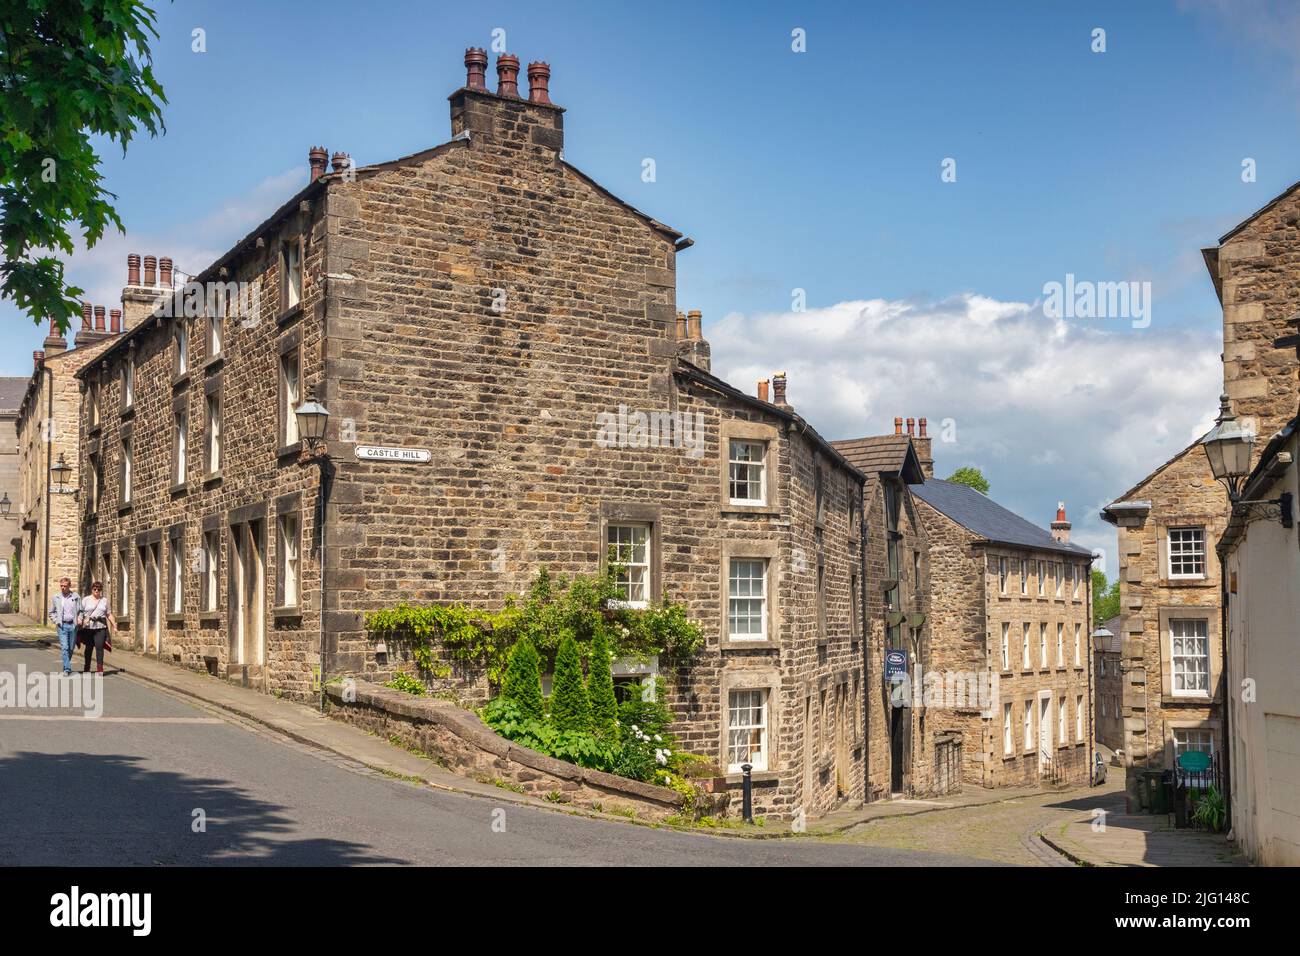 12 juillet 2019:Lancaster, Royaume-Uni - maisons en terrasse victorienne dans la région de Castle Hill de Lancaster, lors d'une belle journée d'été. Banque D'Images